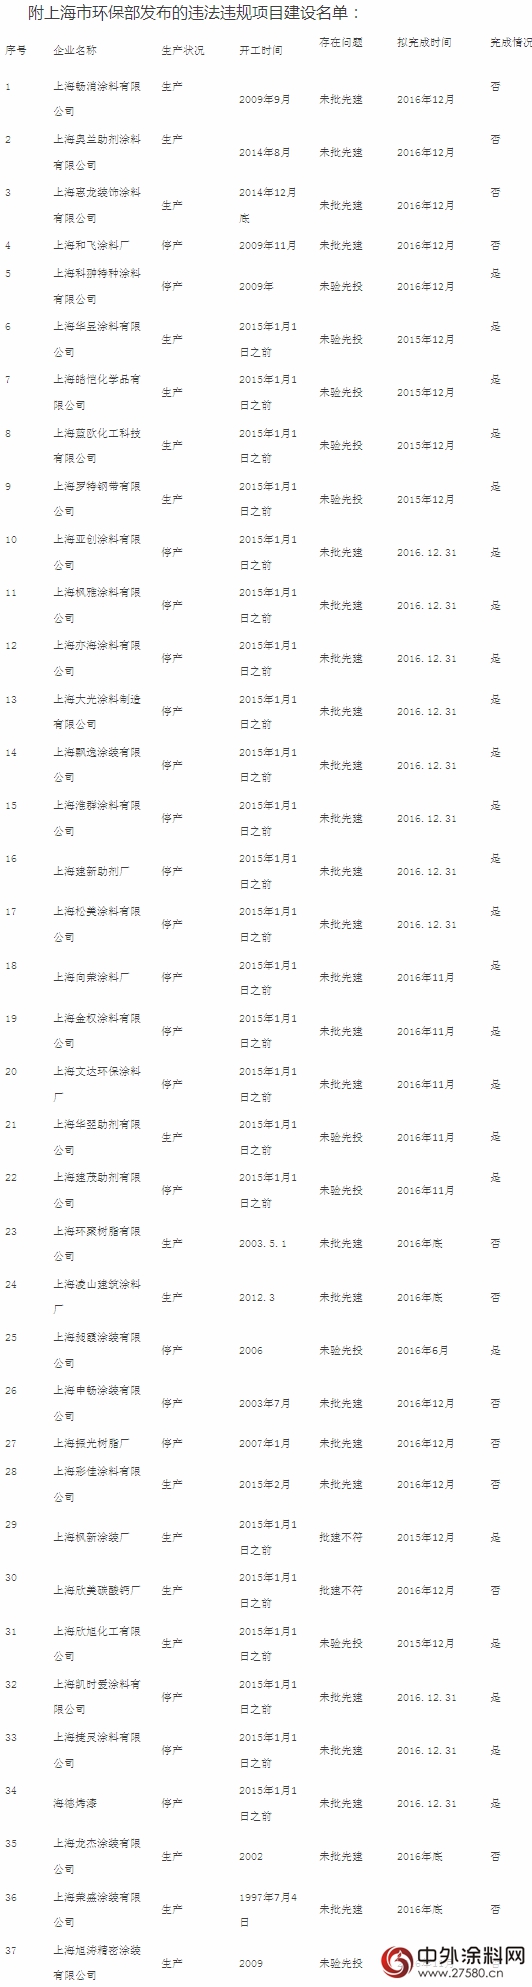 上海环保局发布3516家违法违规项目建设企业 37家涂料类企业上榜